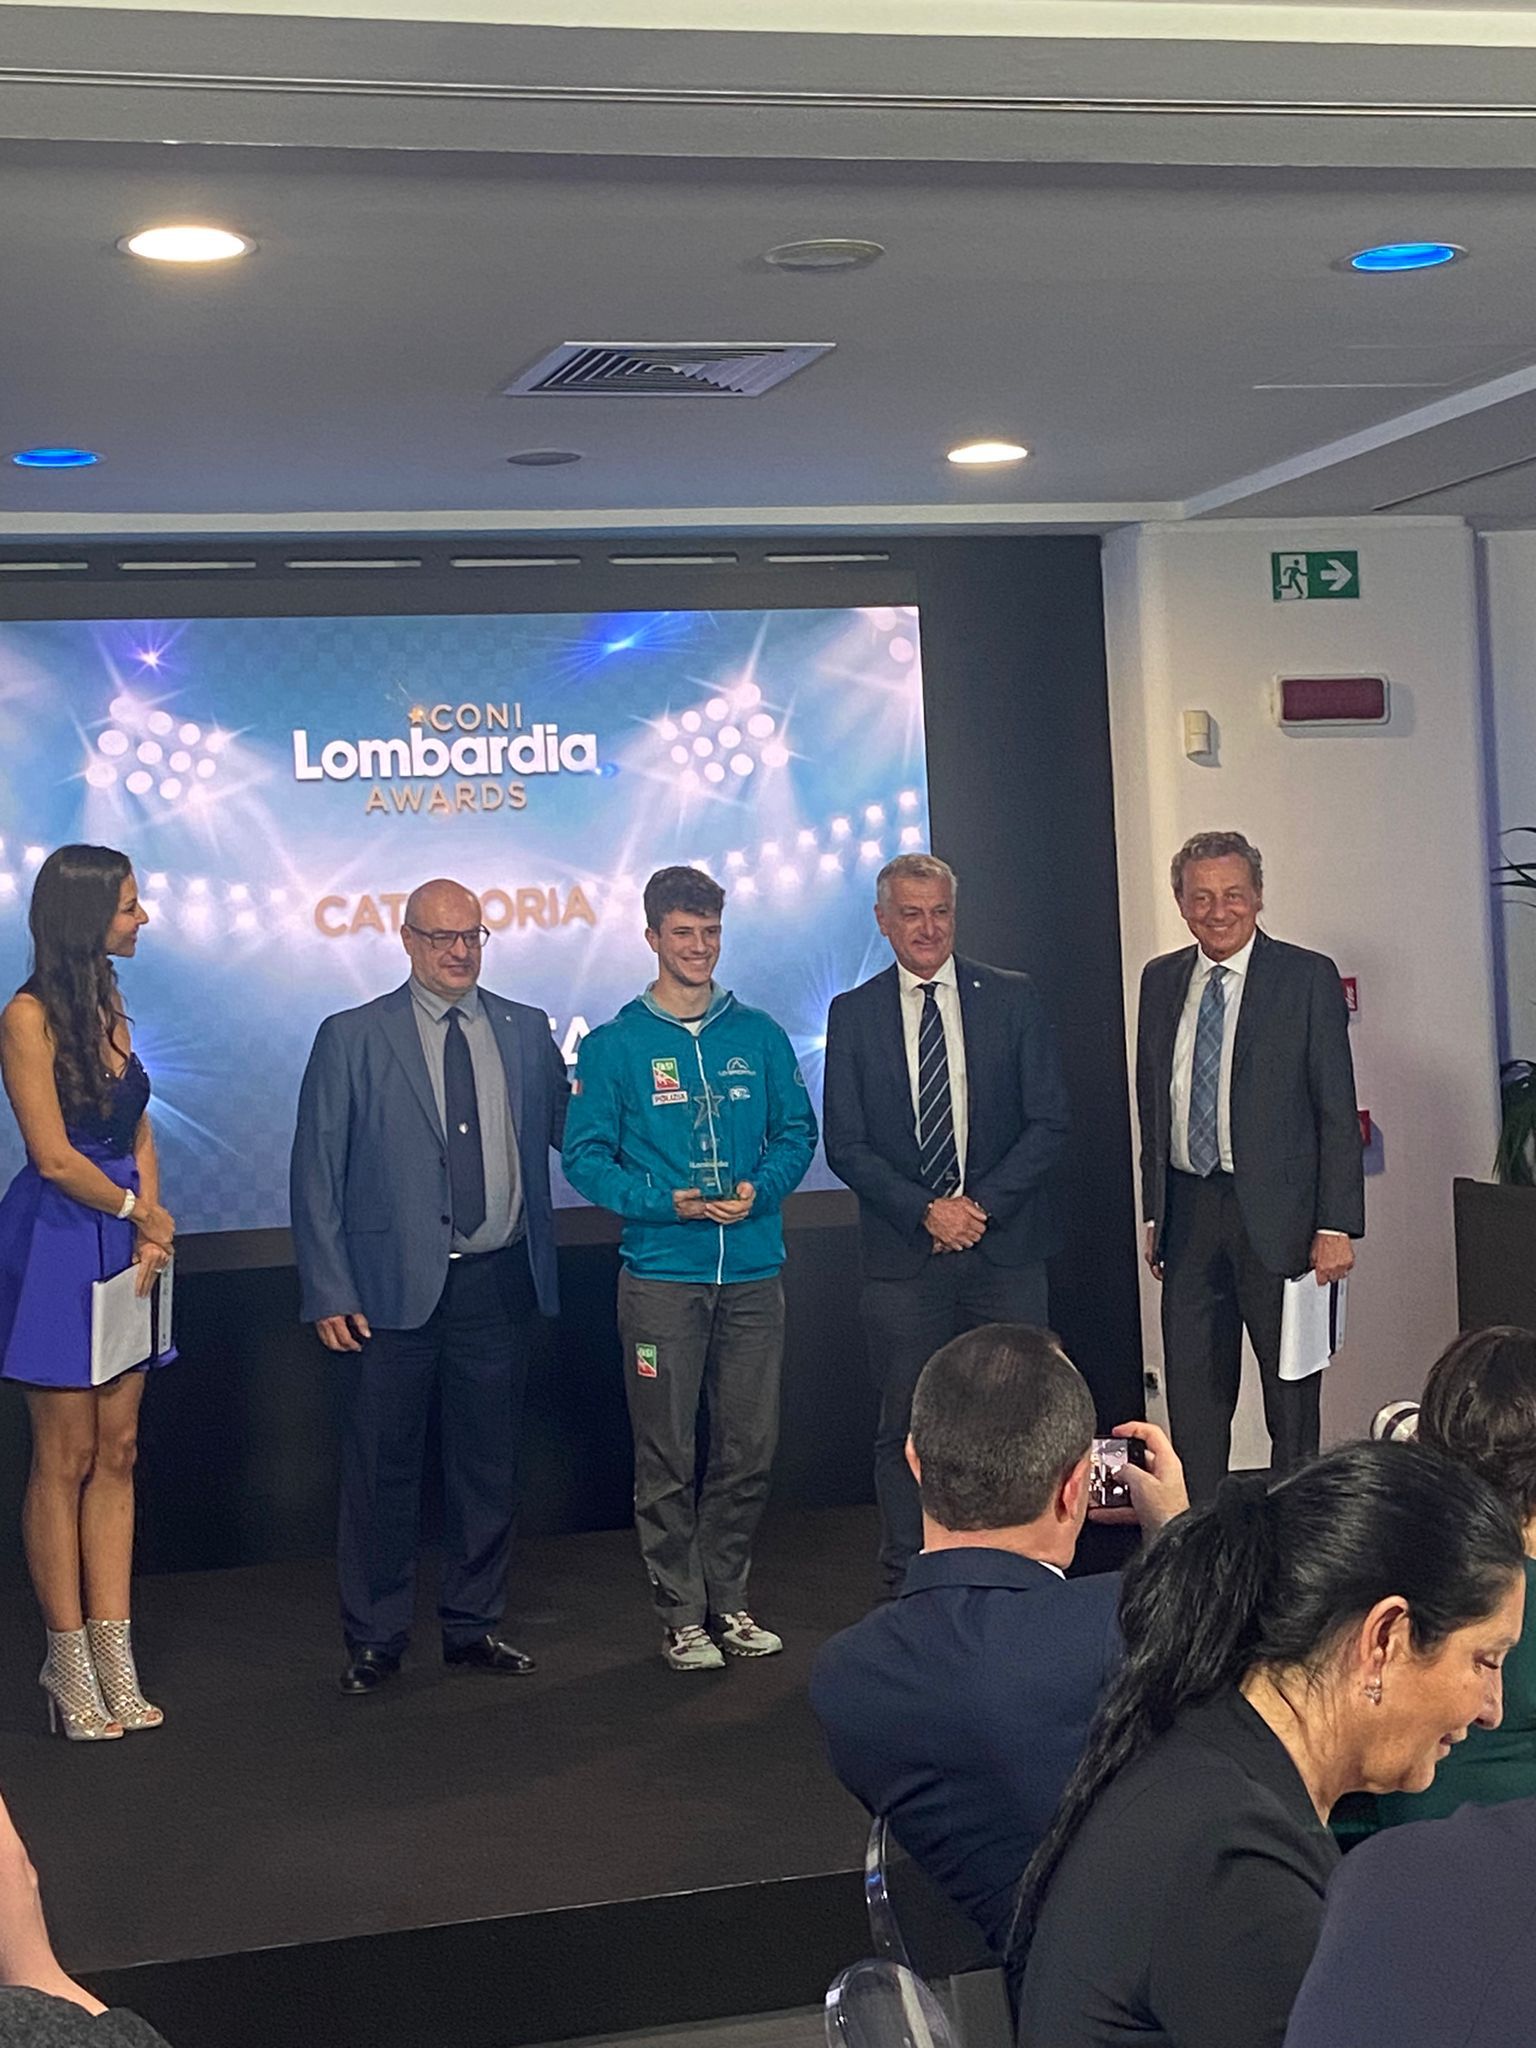 images/Zurloni_Coni_Lombardia_Awards.jpeg